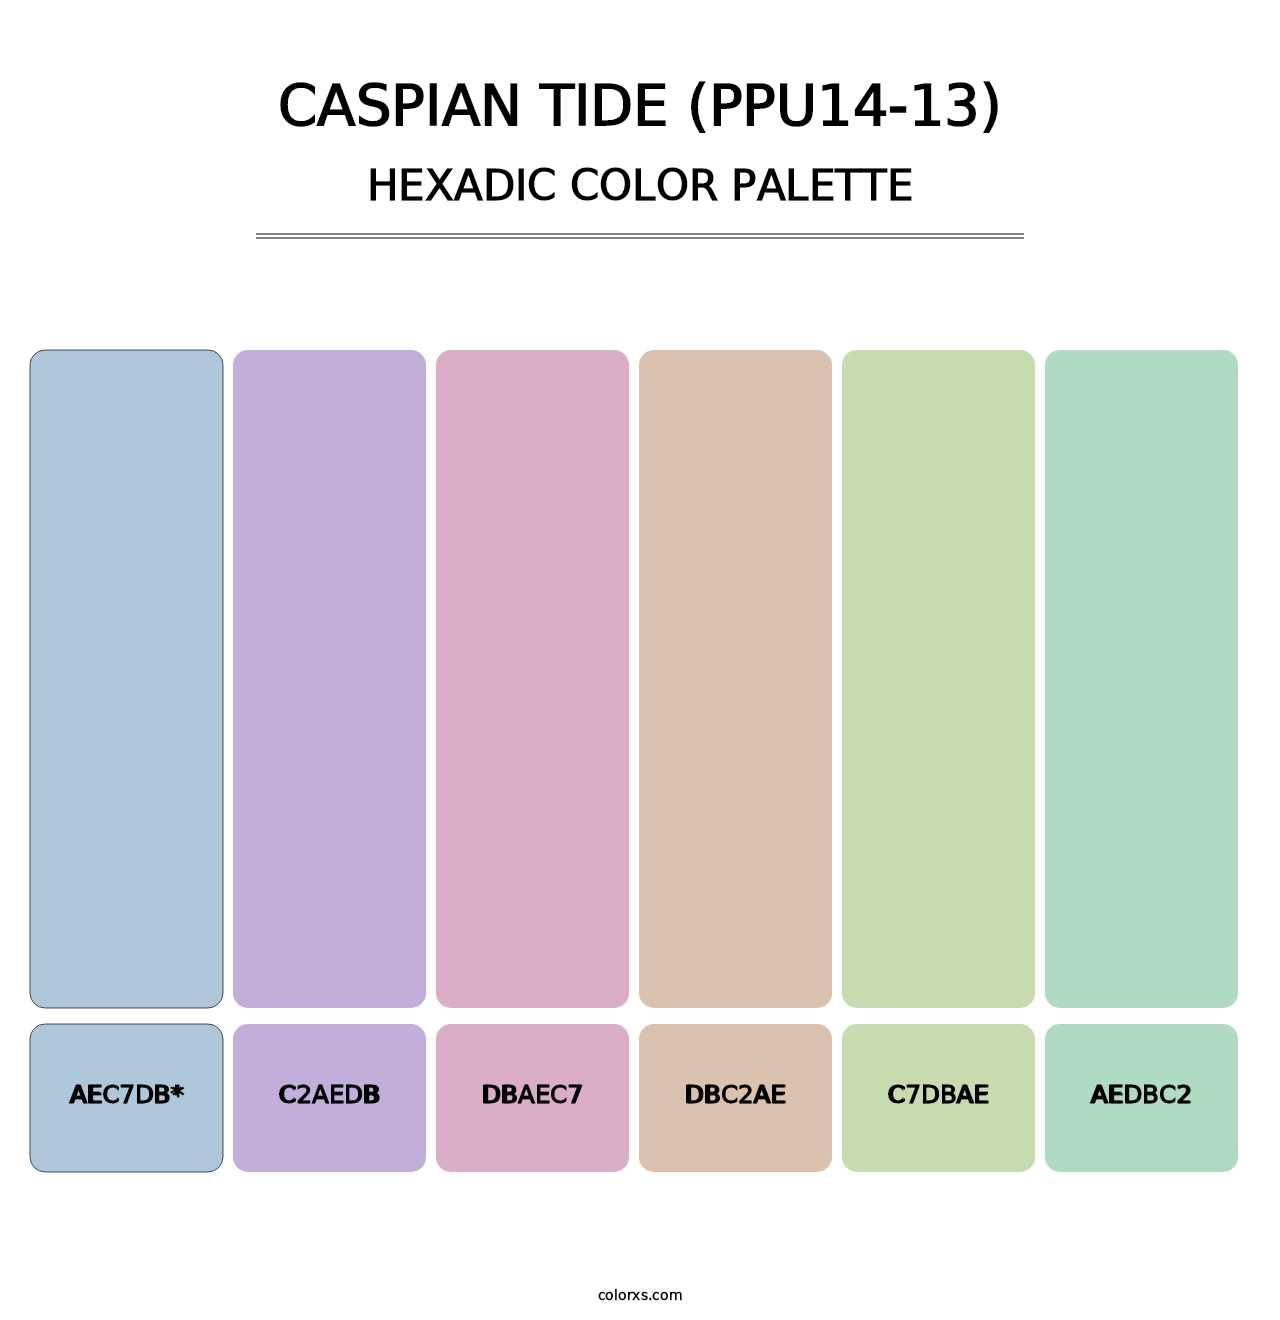 Caspian Tide (PPU14-13) - Hexadic Color Palette